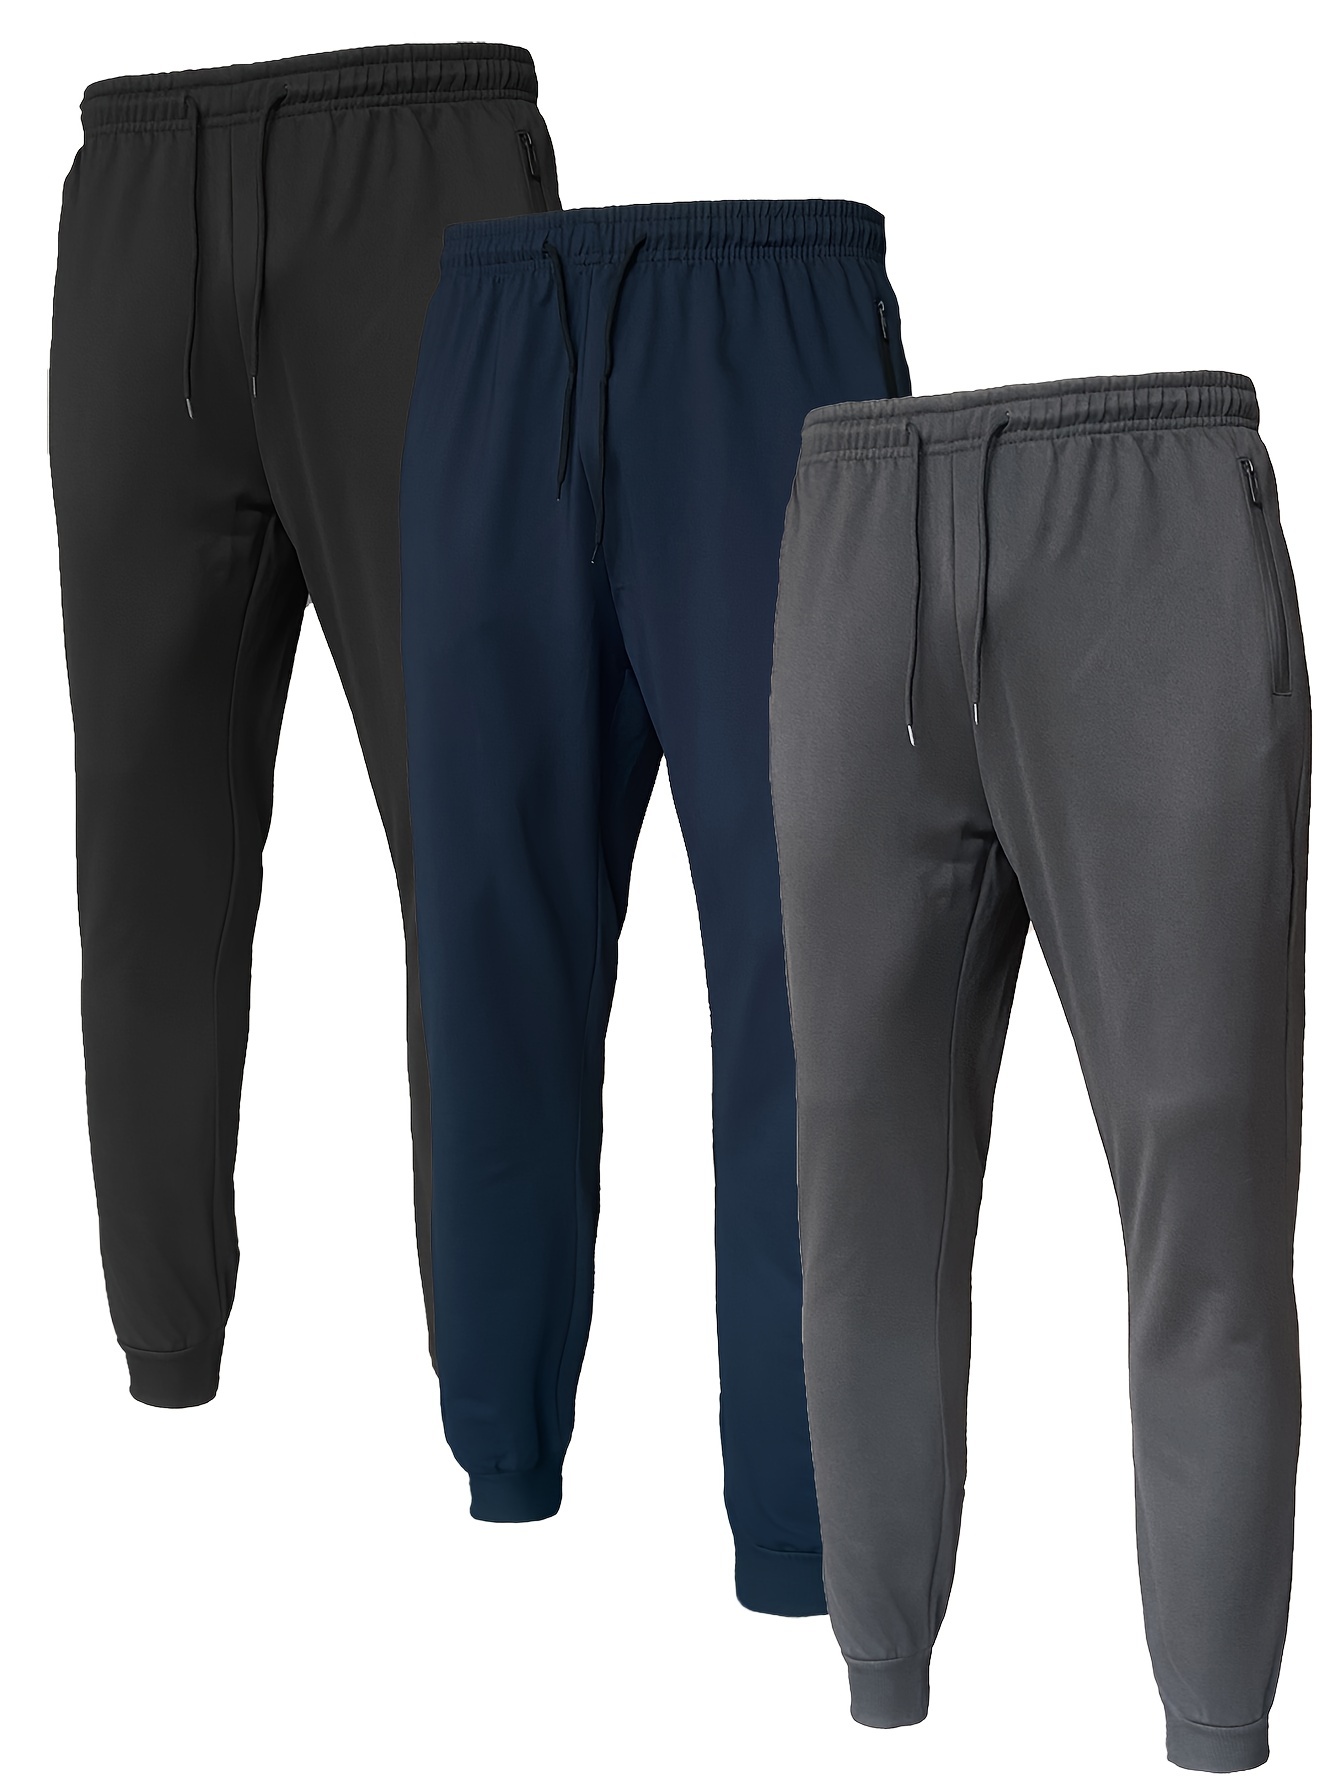 Drawstring Sweatpants Loose Fit Pants Men's Casual Joggers - Temu